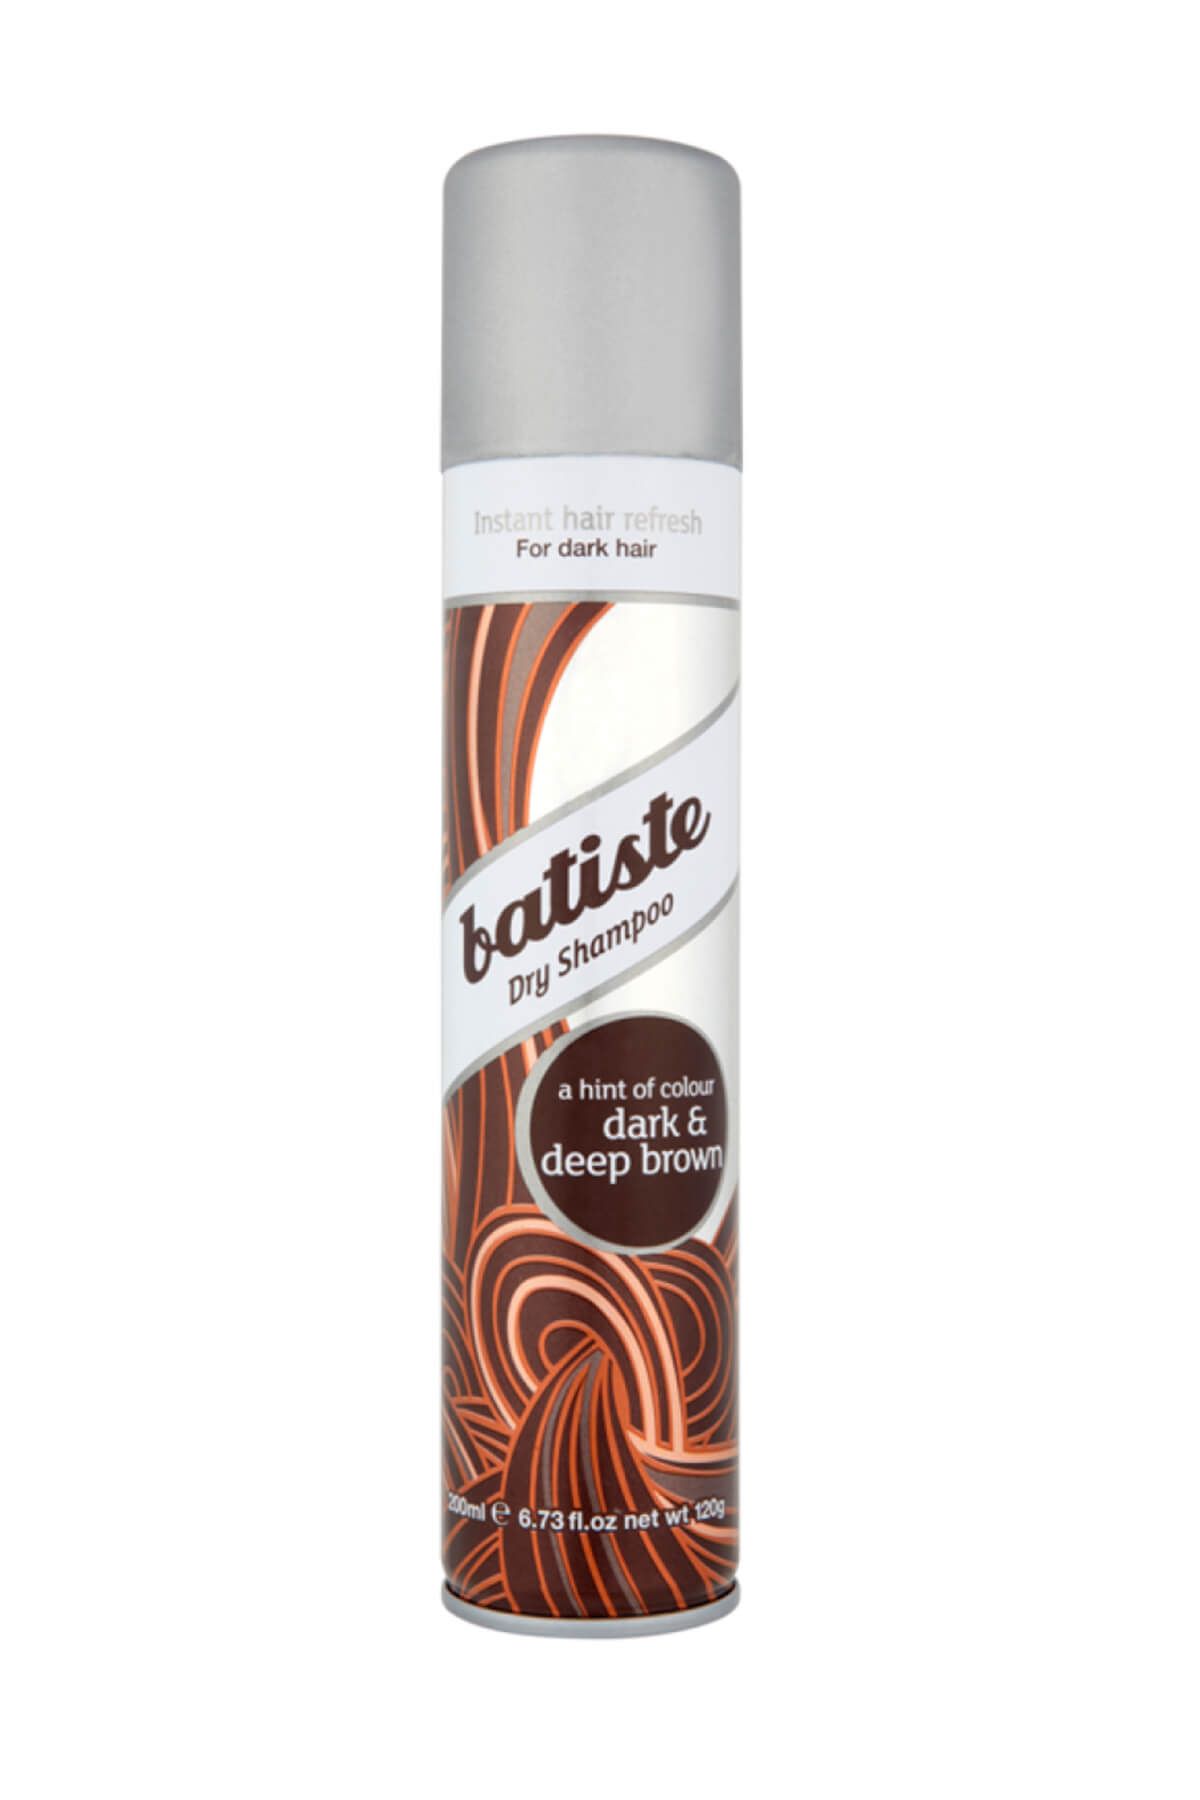 Batiste Kahverengi Saçlar için Kuru Şampuan - Dry Shampoo Dark & Deep Brown 200 ml 5010724527443